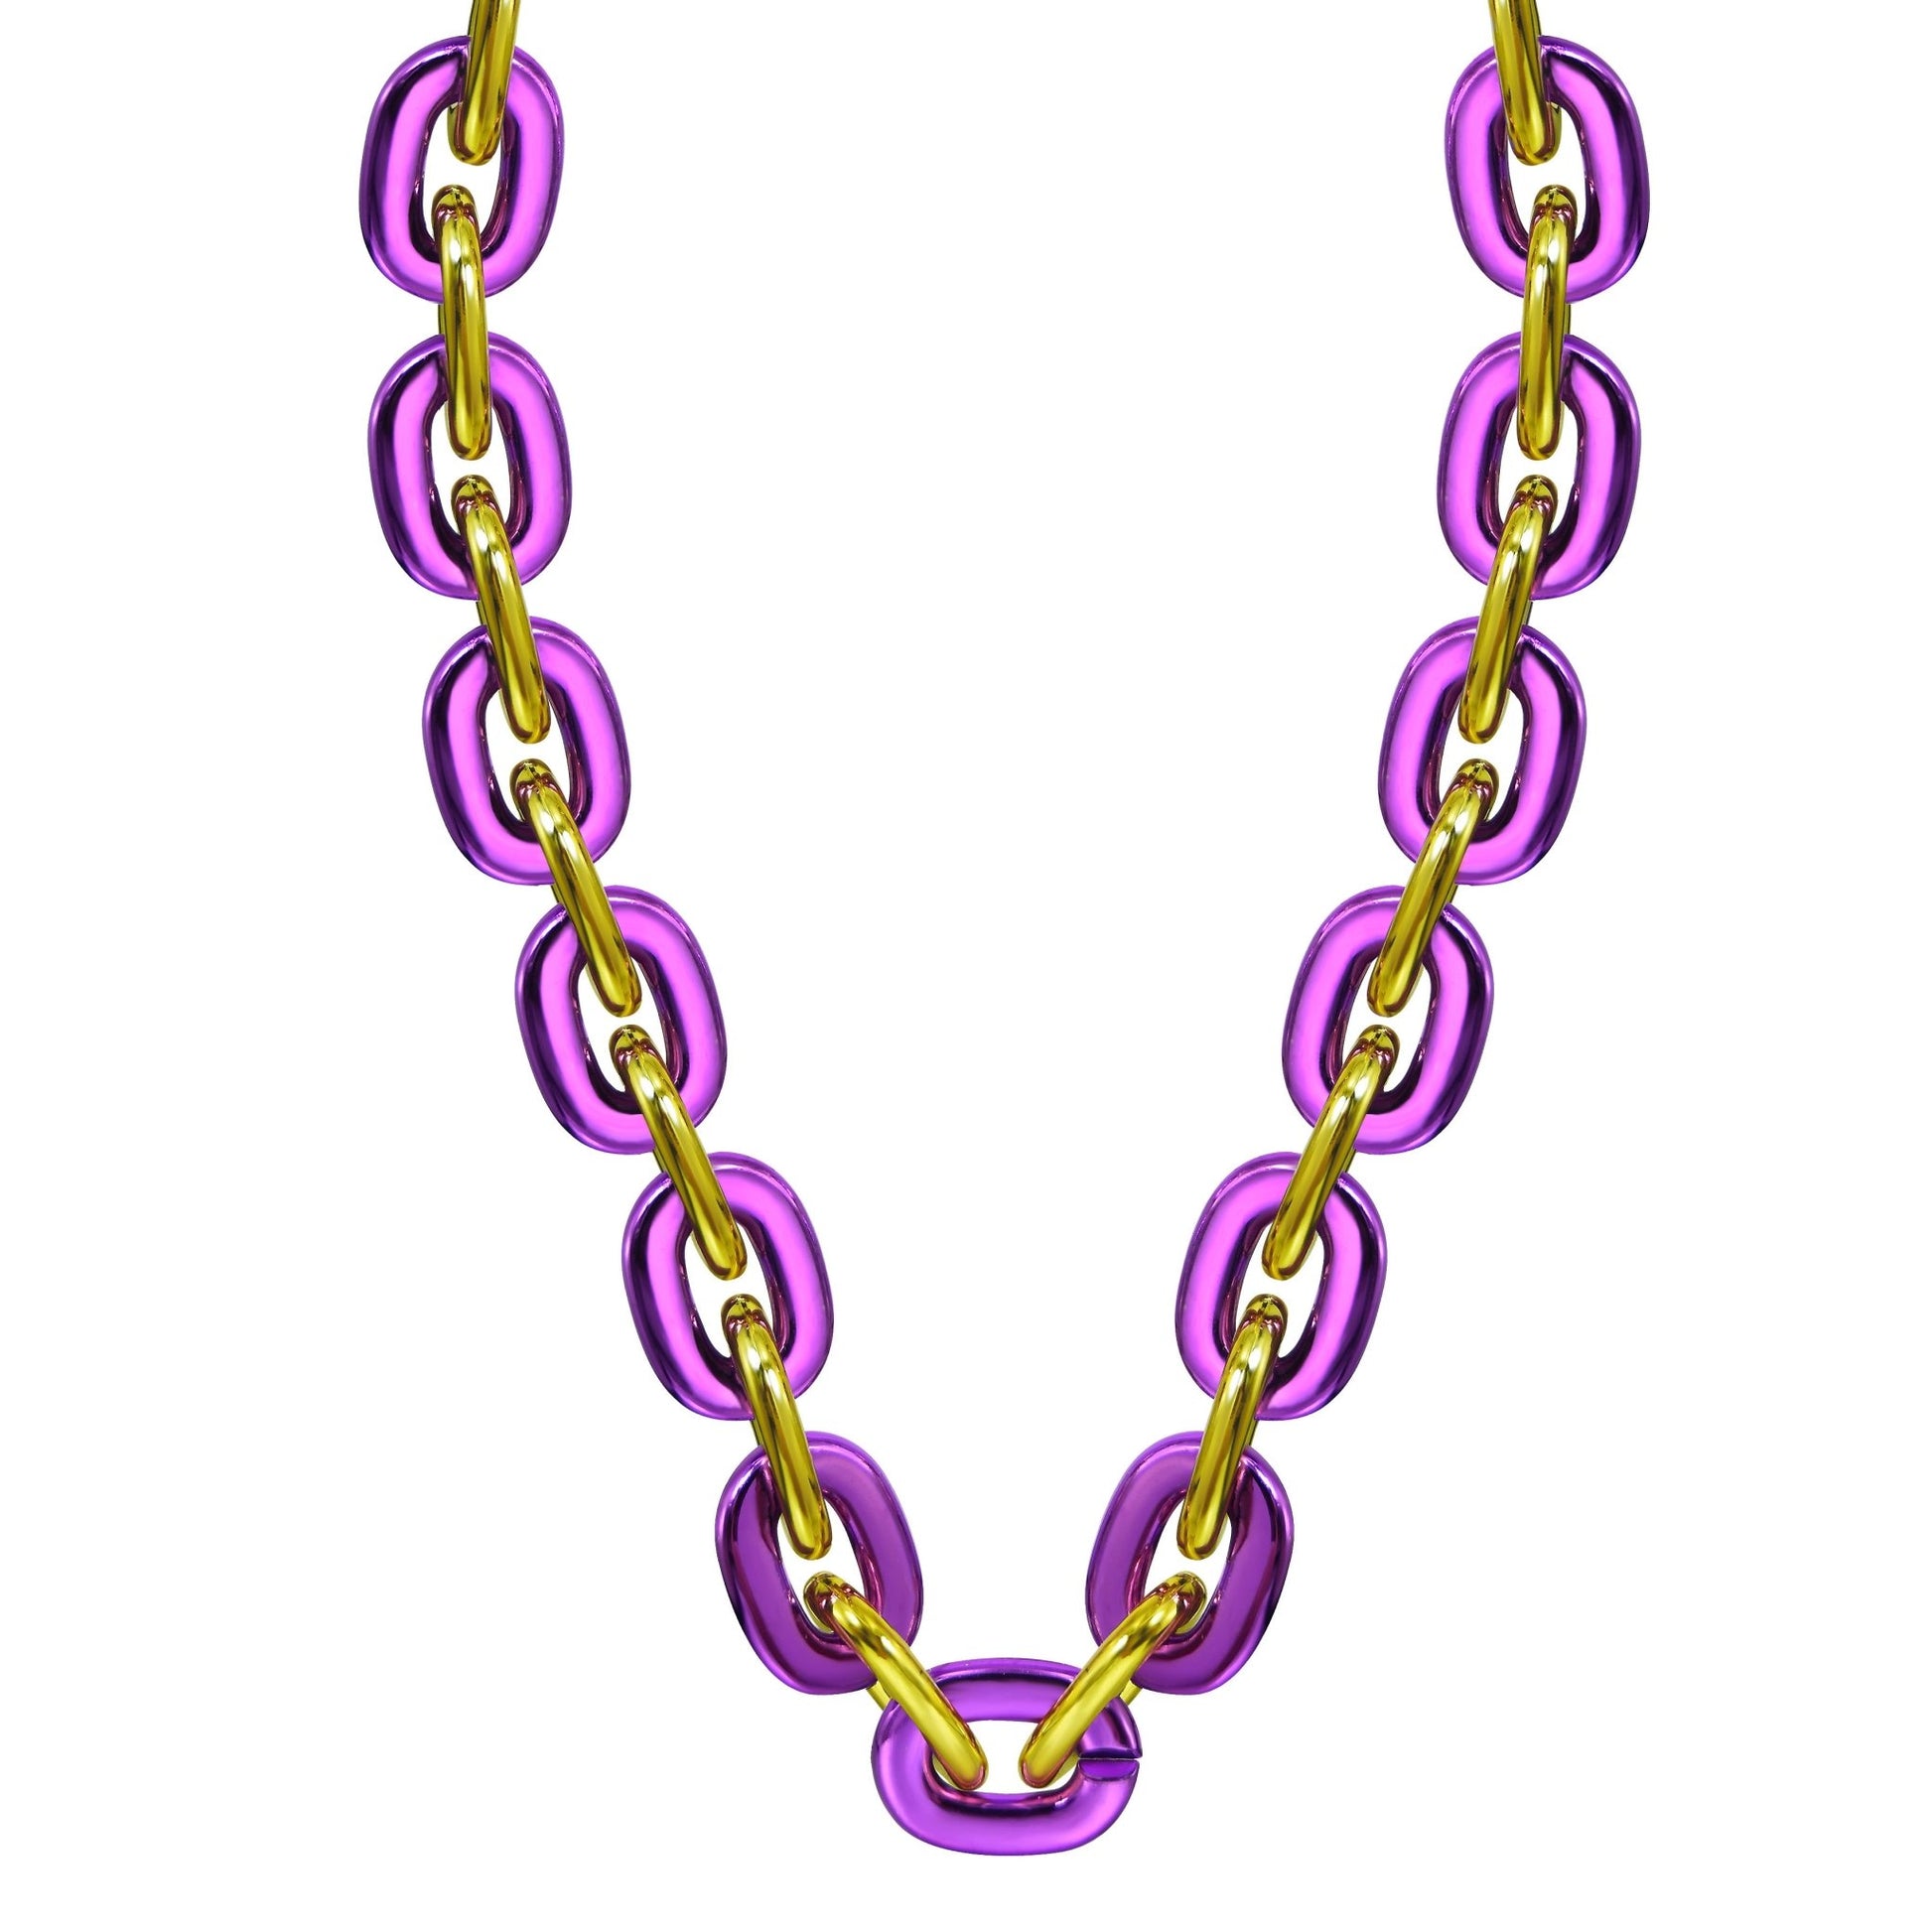 Jumbo Fan Chain Necklace - Gamedays Gear - Purple / Gold